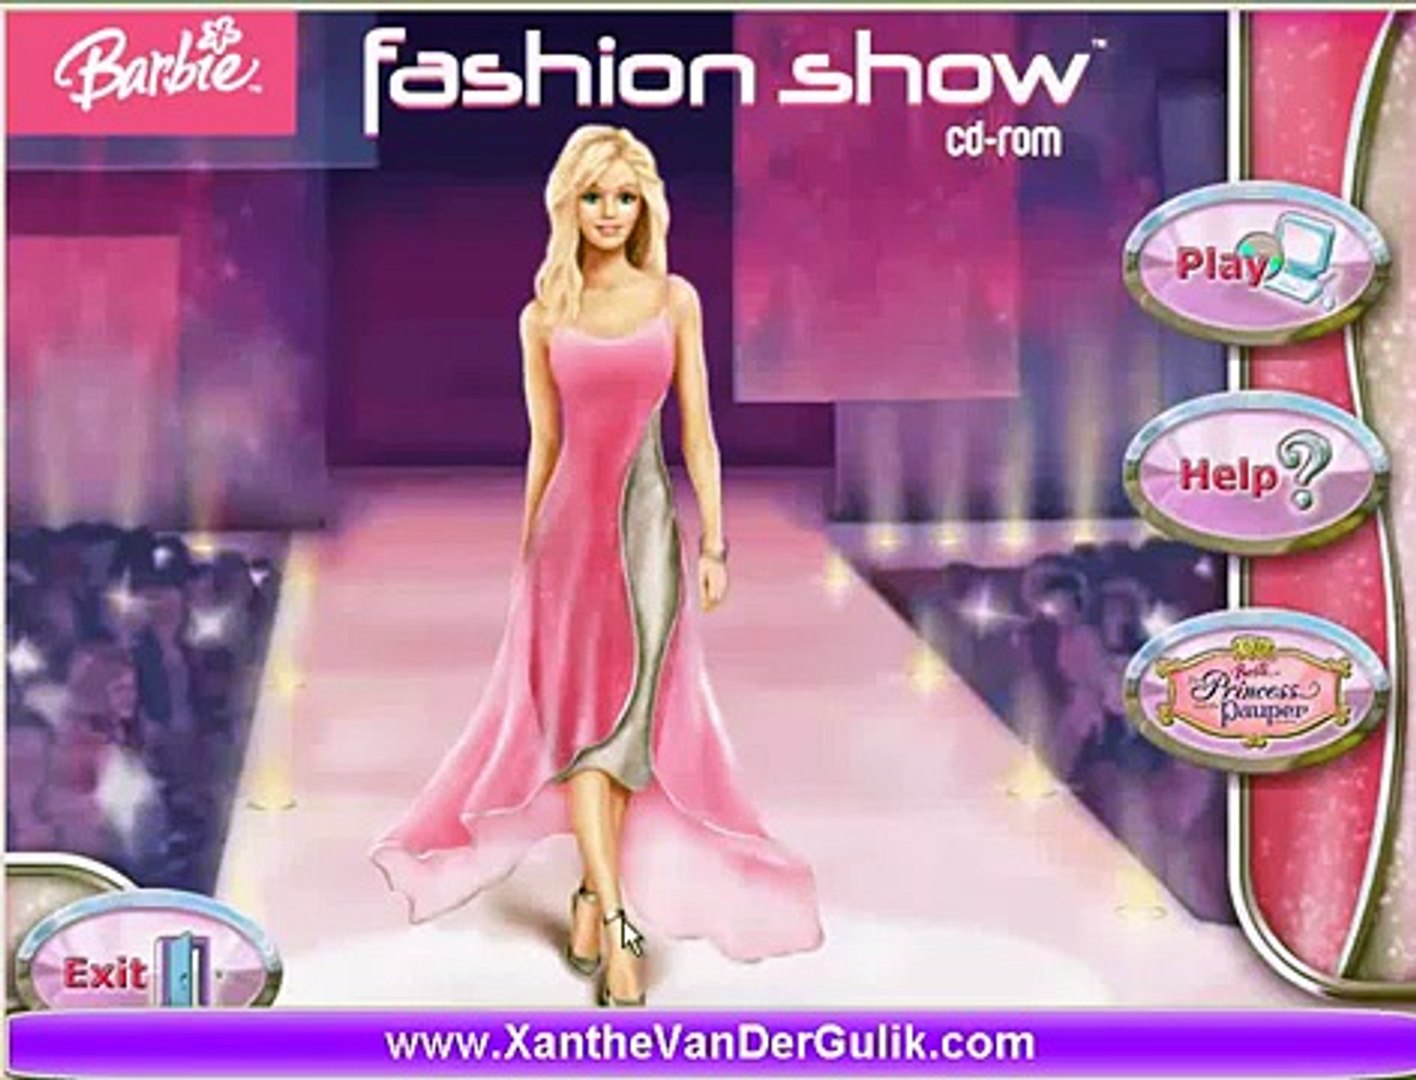 barbie games fashion